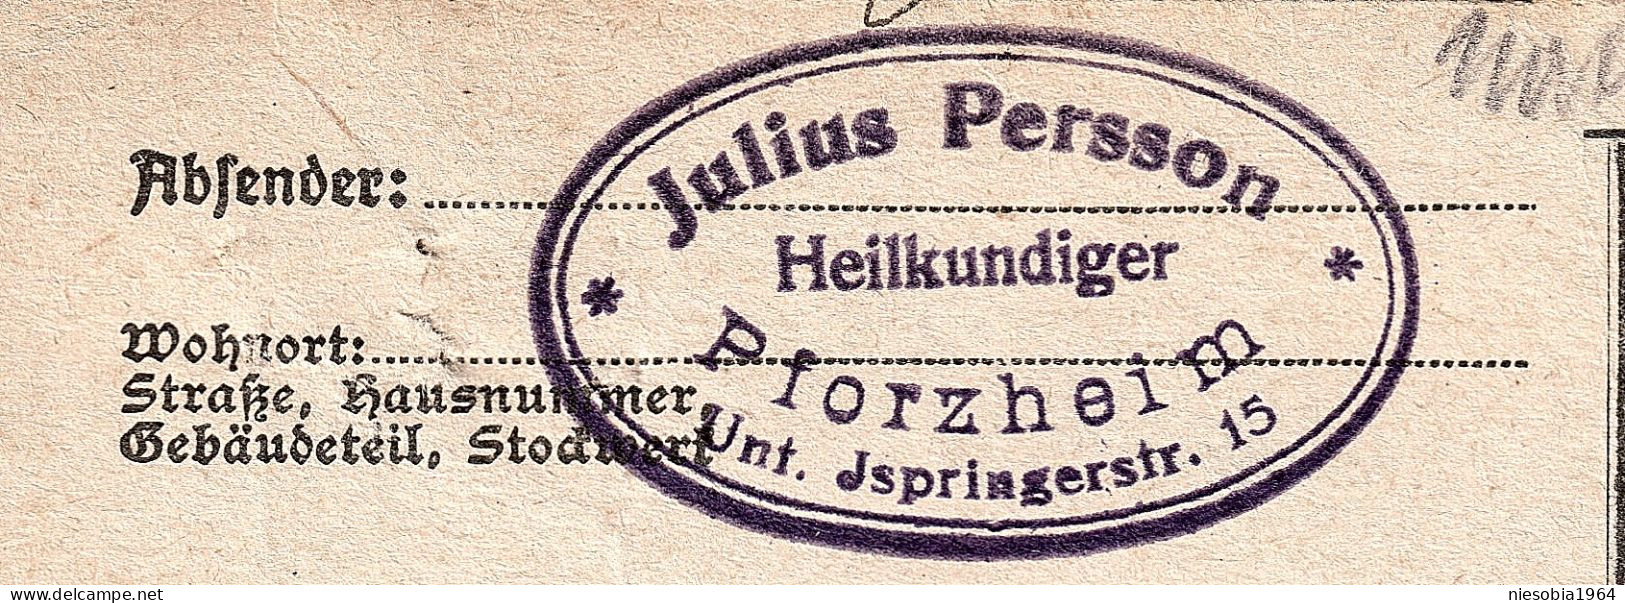 Julius Persson Heilkundiger Pfroheim Unter Springerstraße 15 Siegel Pforzheim 25.06.1932 - Postcards